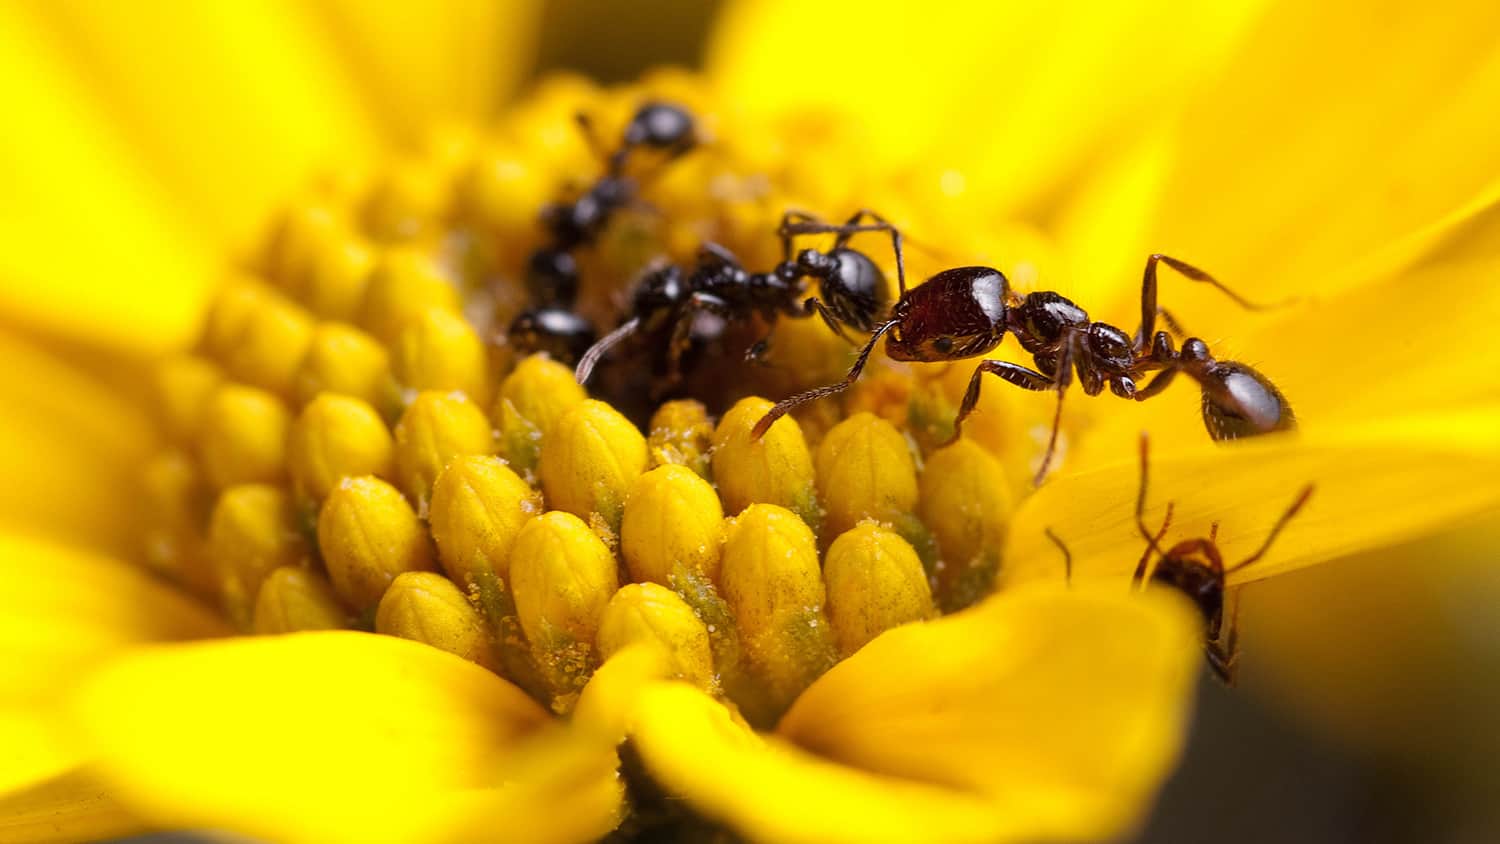 Ant antibiotic research